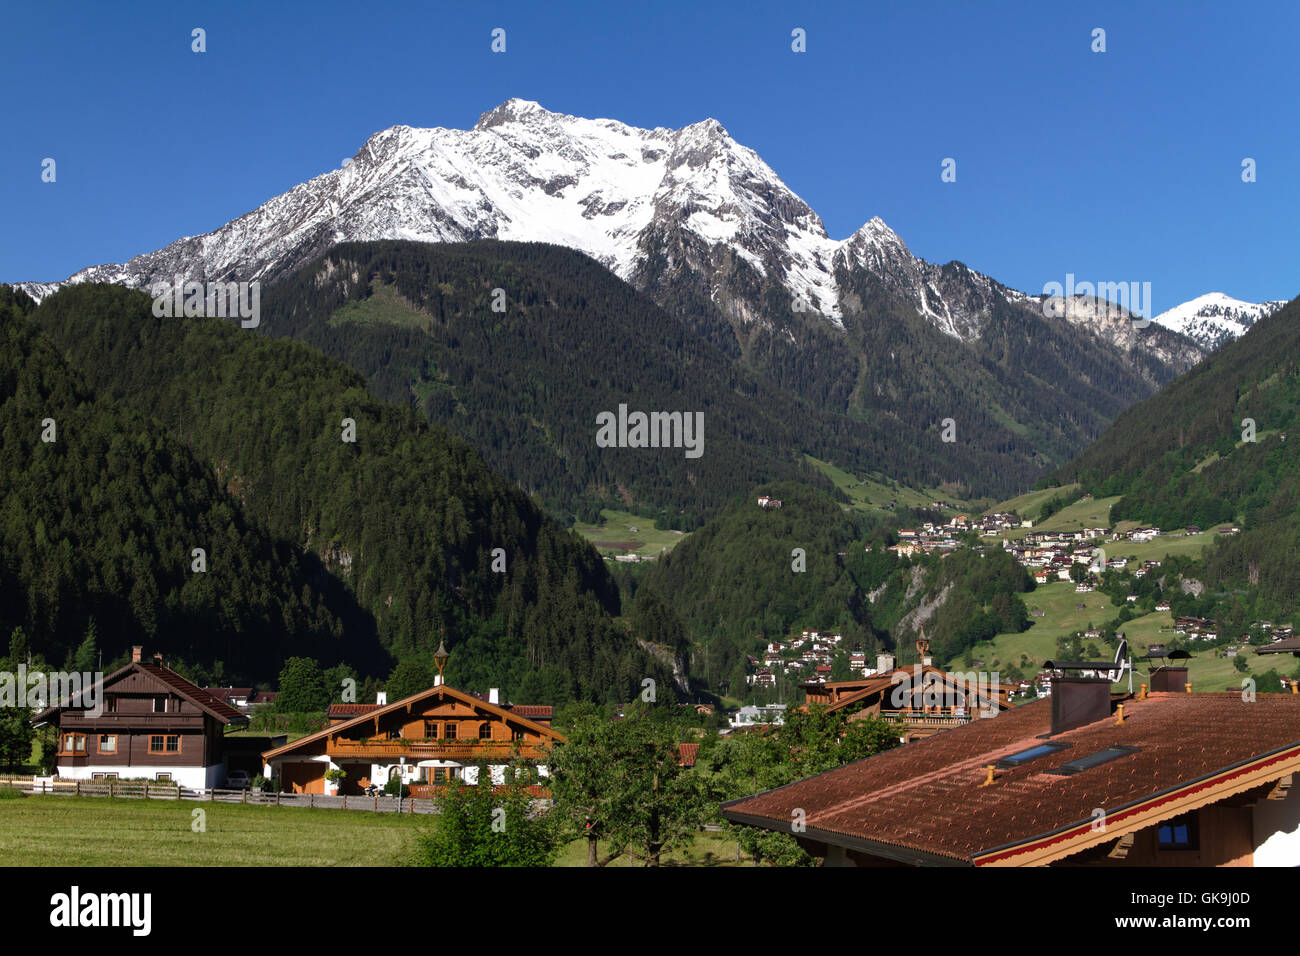 mountains alps austrians Stock Photo